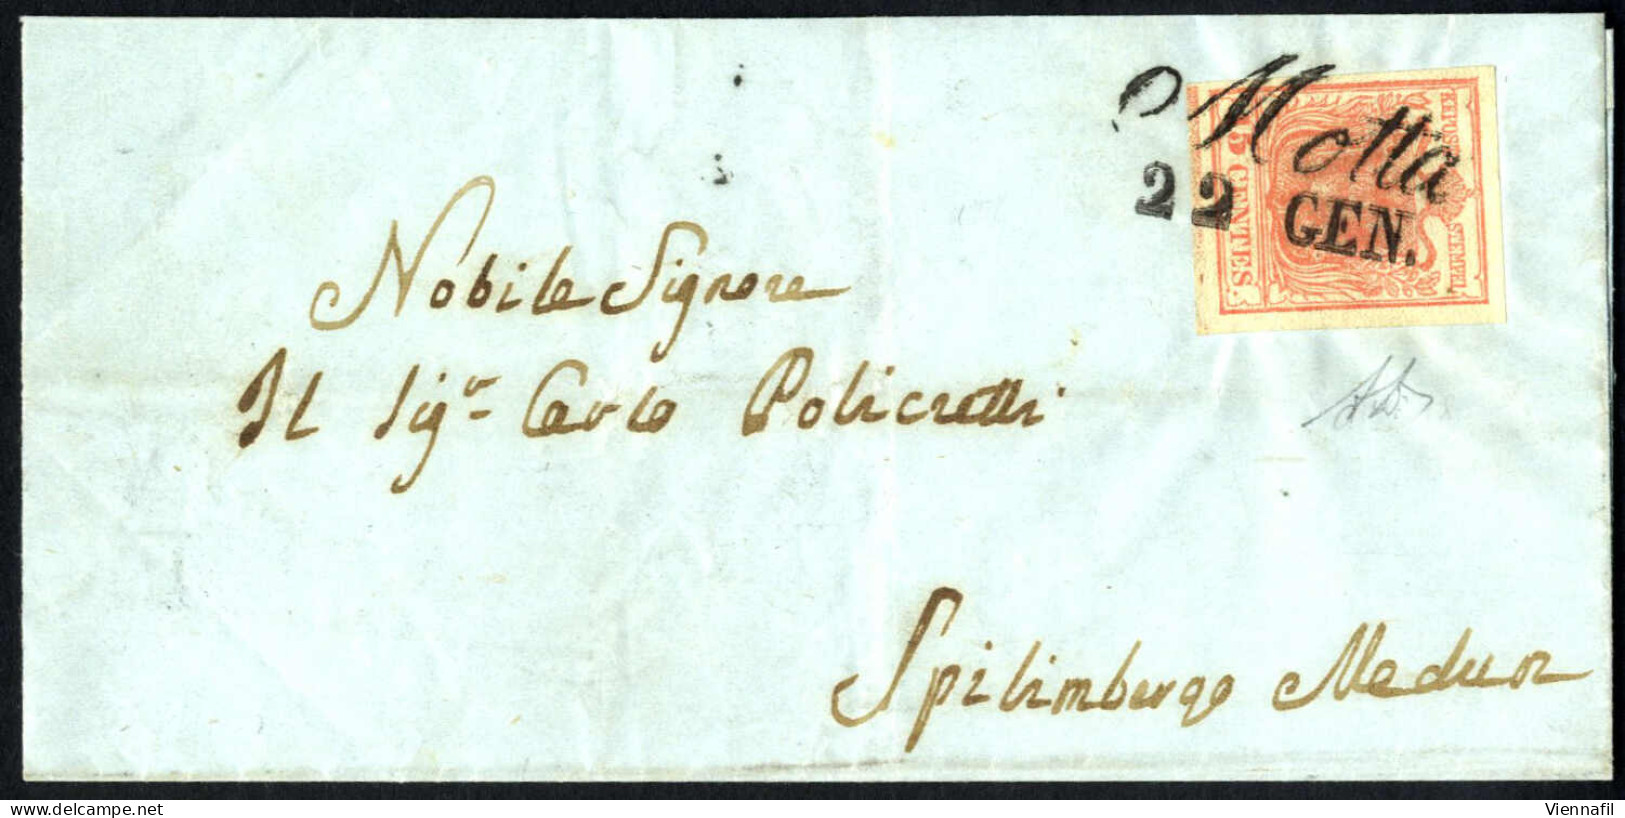 Cover 1851, Lettera Da Motta Il 22.1 Per Spilimbergo Affrancata Con 15 Cent. Rosa II Tipo, I Sottotipo Con Spazio Tipogr - Lombardy-Venetia